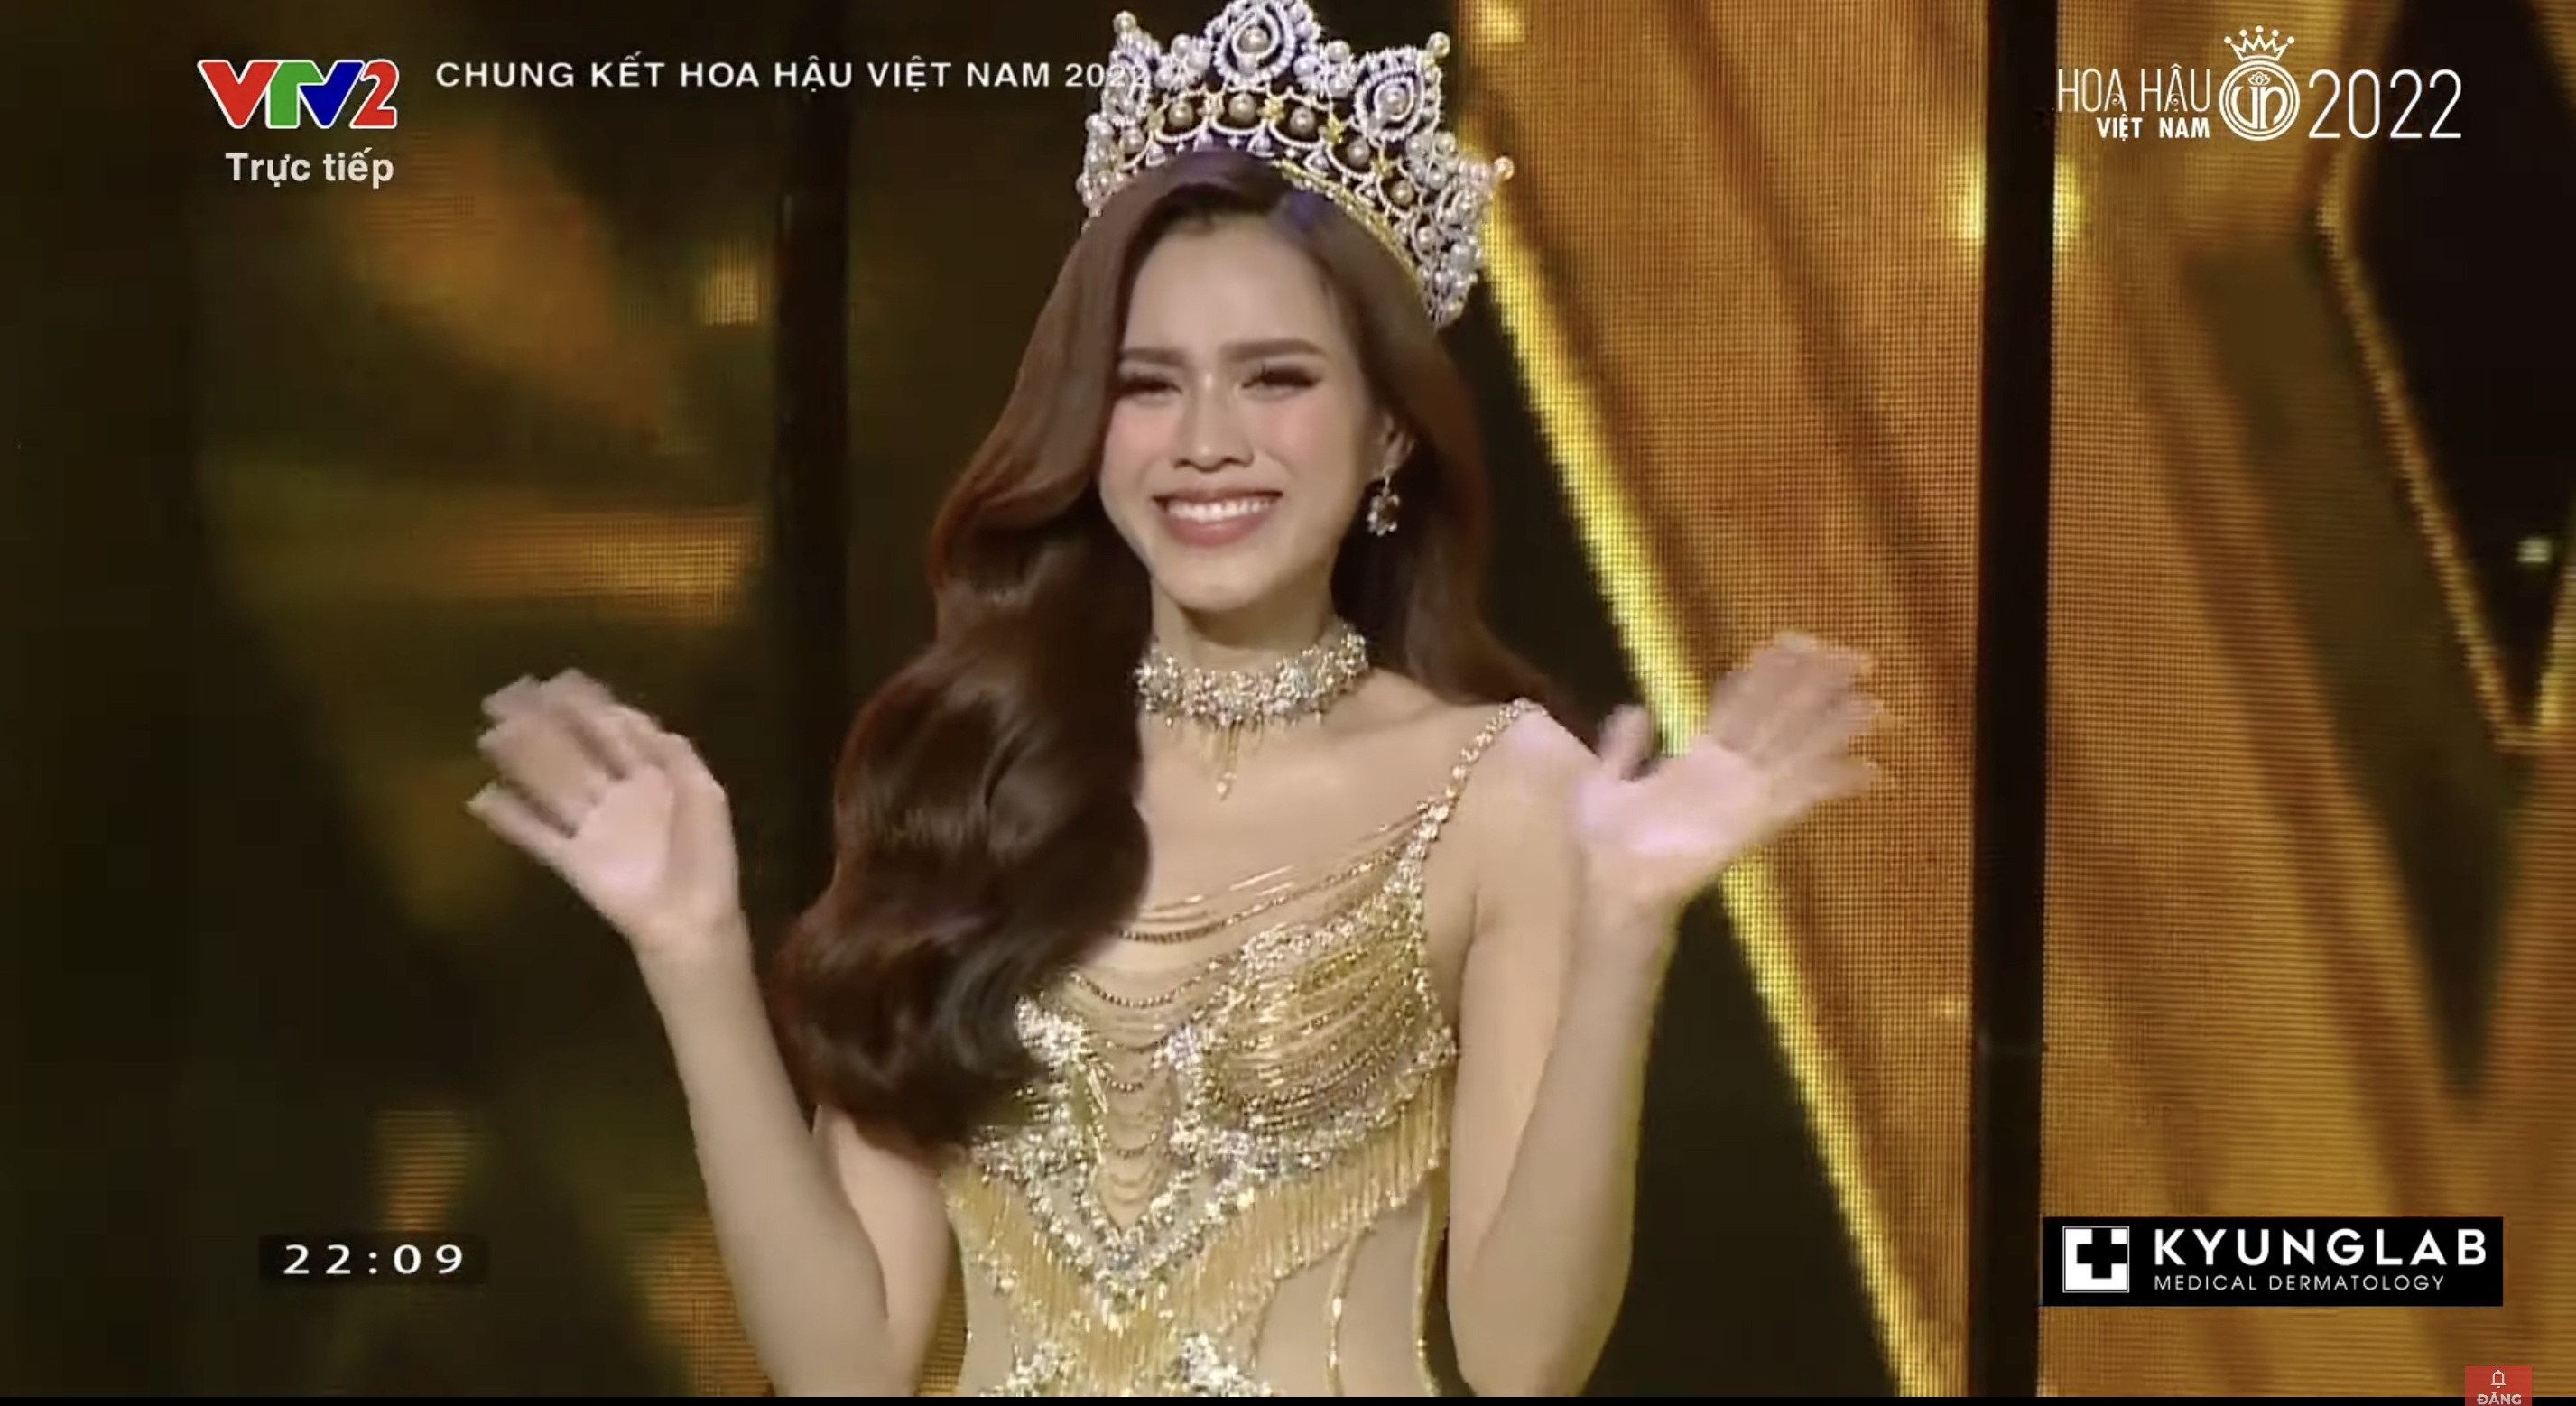 Chung kết Hoa hậu Việt Nam 2022: Tân Hoa hậu chính thức gọi tên Huỳnh Thị Thanh Thuỷ - 13